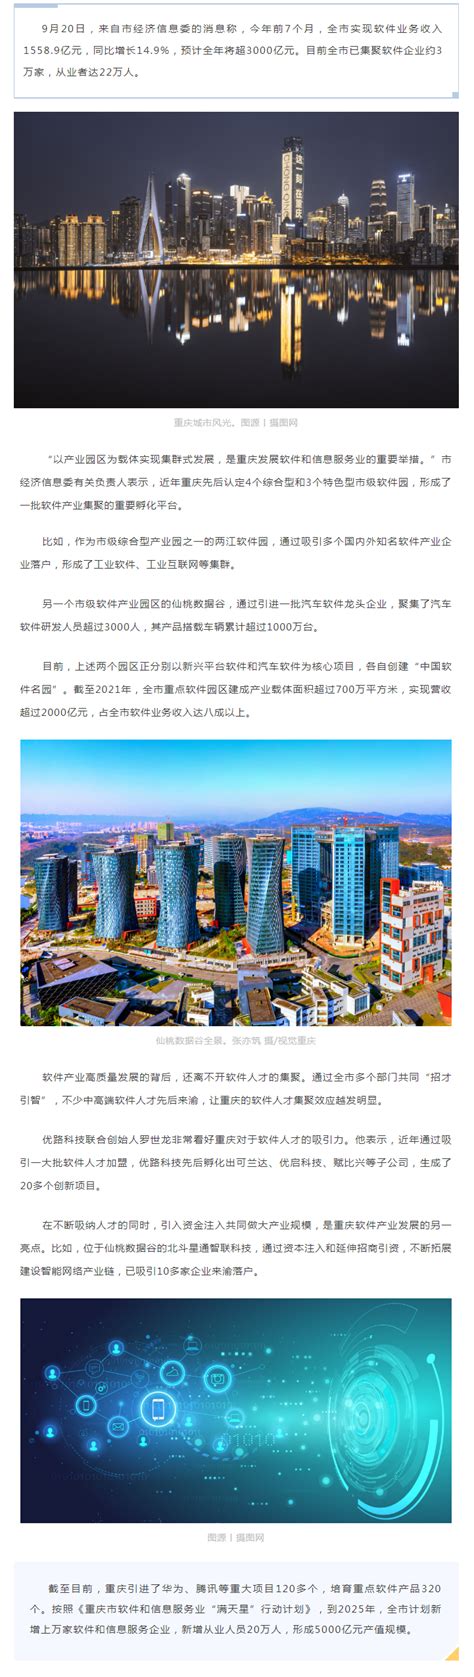 1—7月重庆实现软件业务收入1559亿元-重庆市招商投资促进局